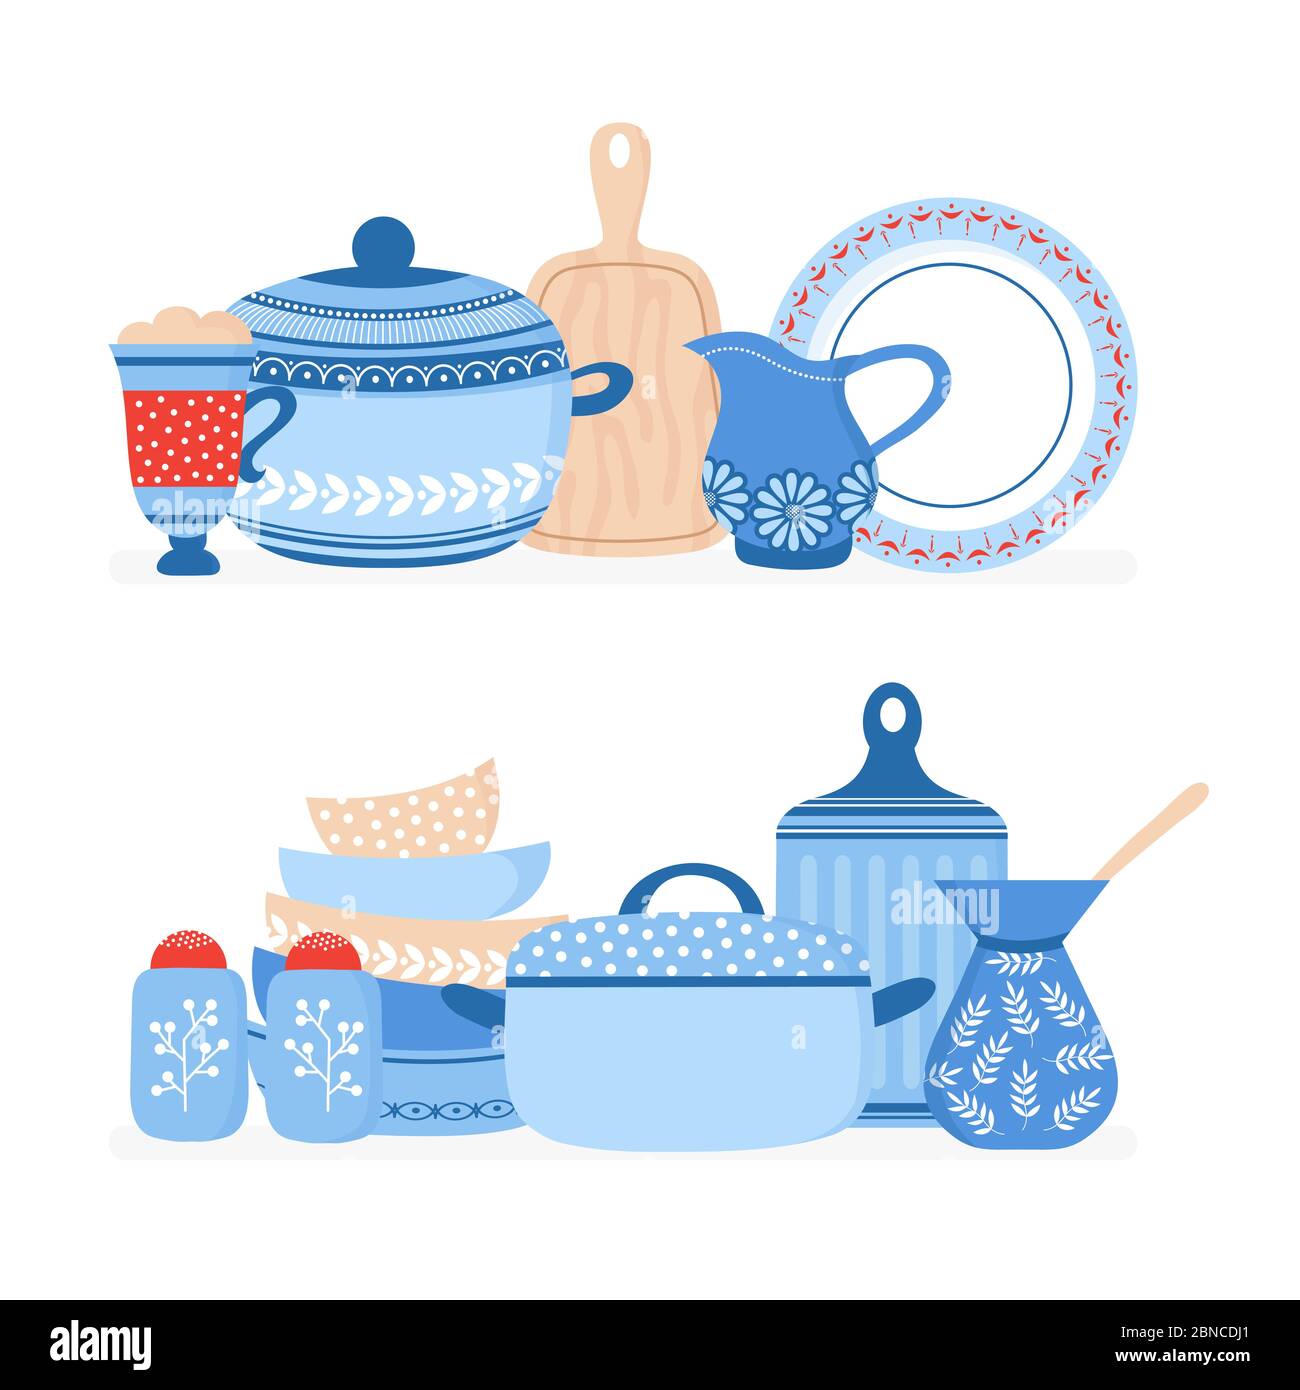 Cookware cartoon. Utensili da cucina, utensili da cucina vettoriali set isolato. Illustrazione di utensili da cucina, stoviglie per utensili da cucina Illustrazione Vettoriale